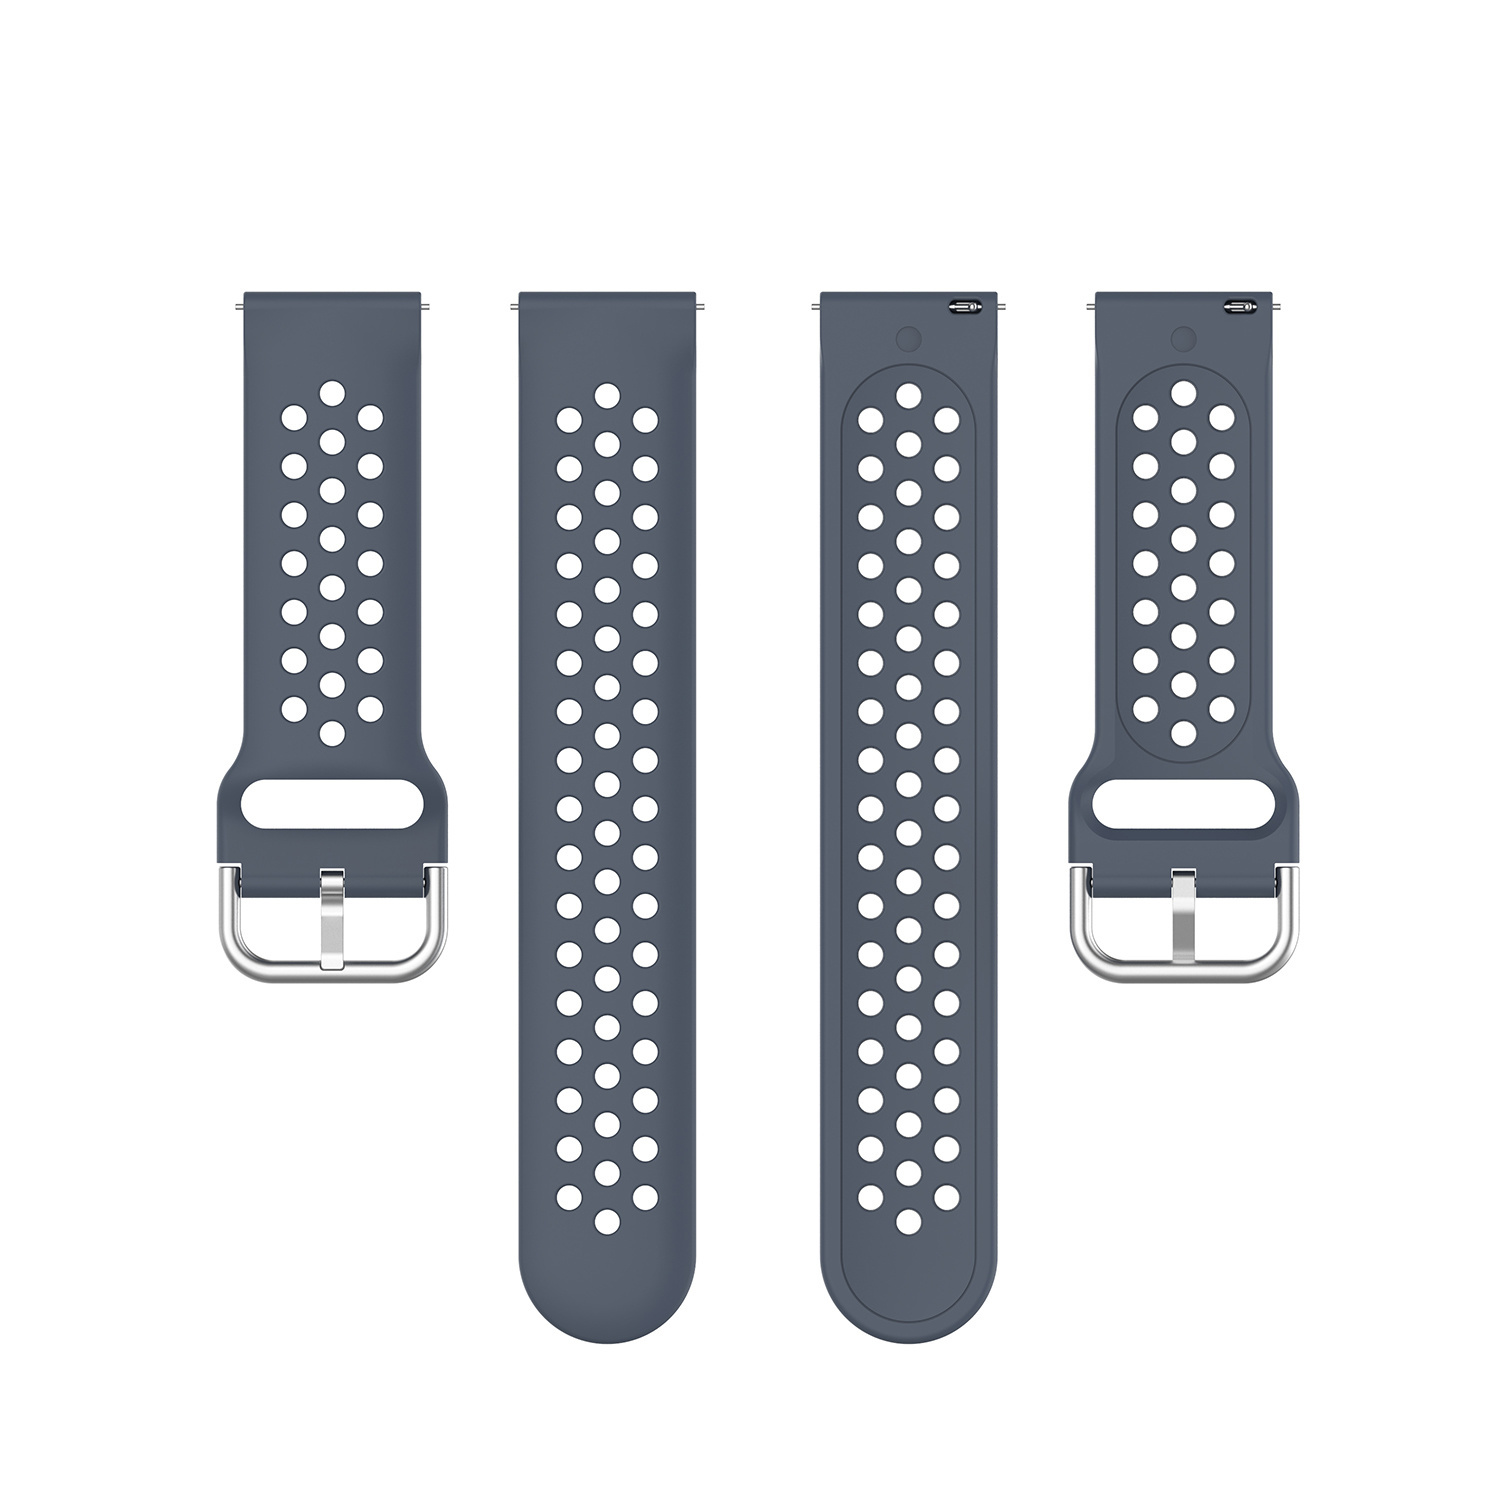 Bracelet sport double boucle Huawei Watch GT - gris